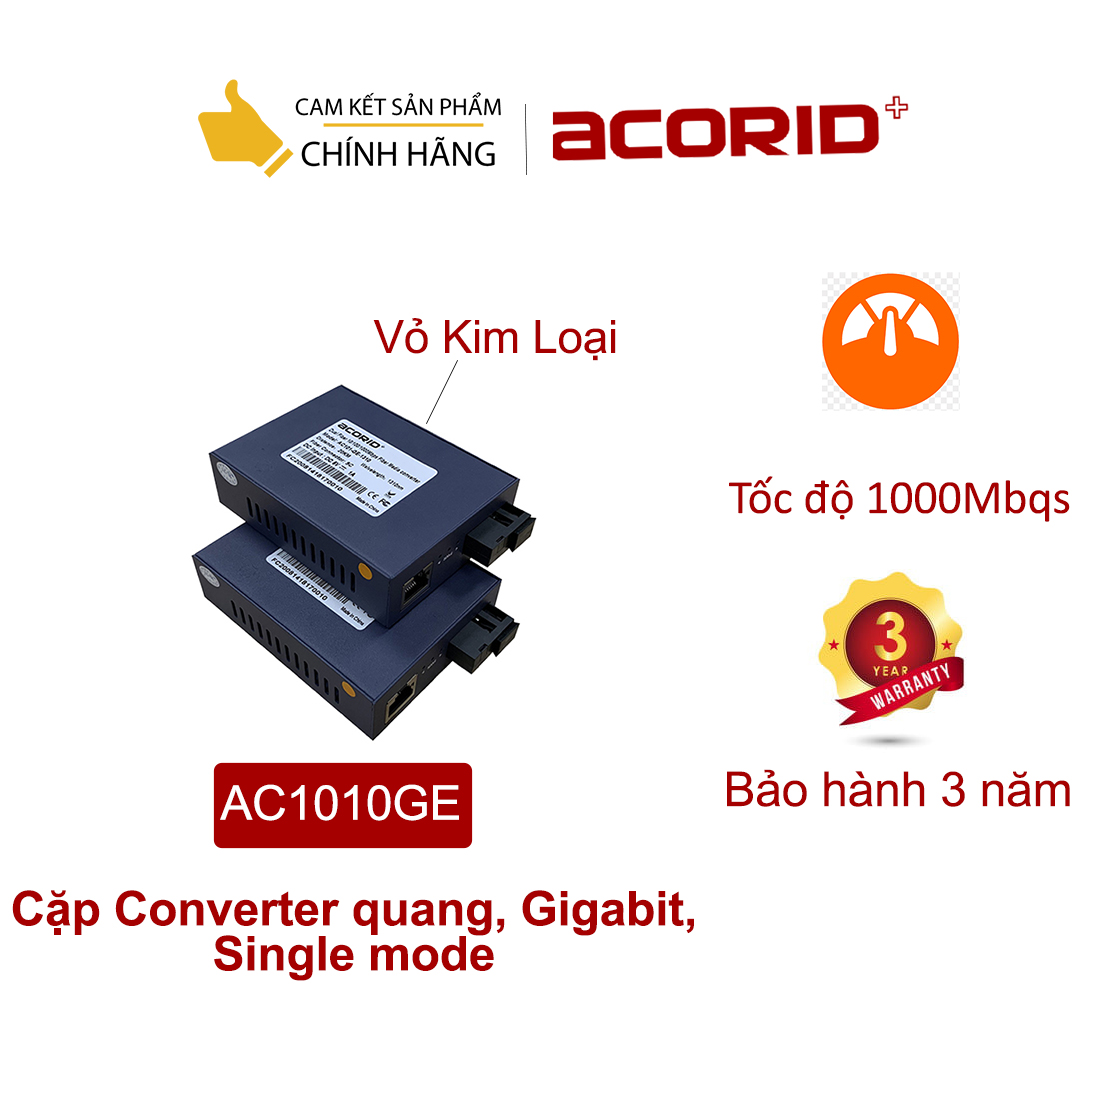 Cặp Converter quang, Gigabit, Single mode - Acorid AC101-GE - Hàng Nhập Khẩu